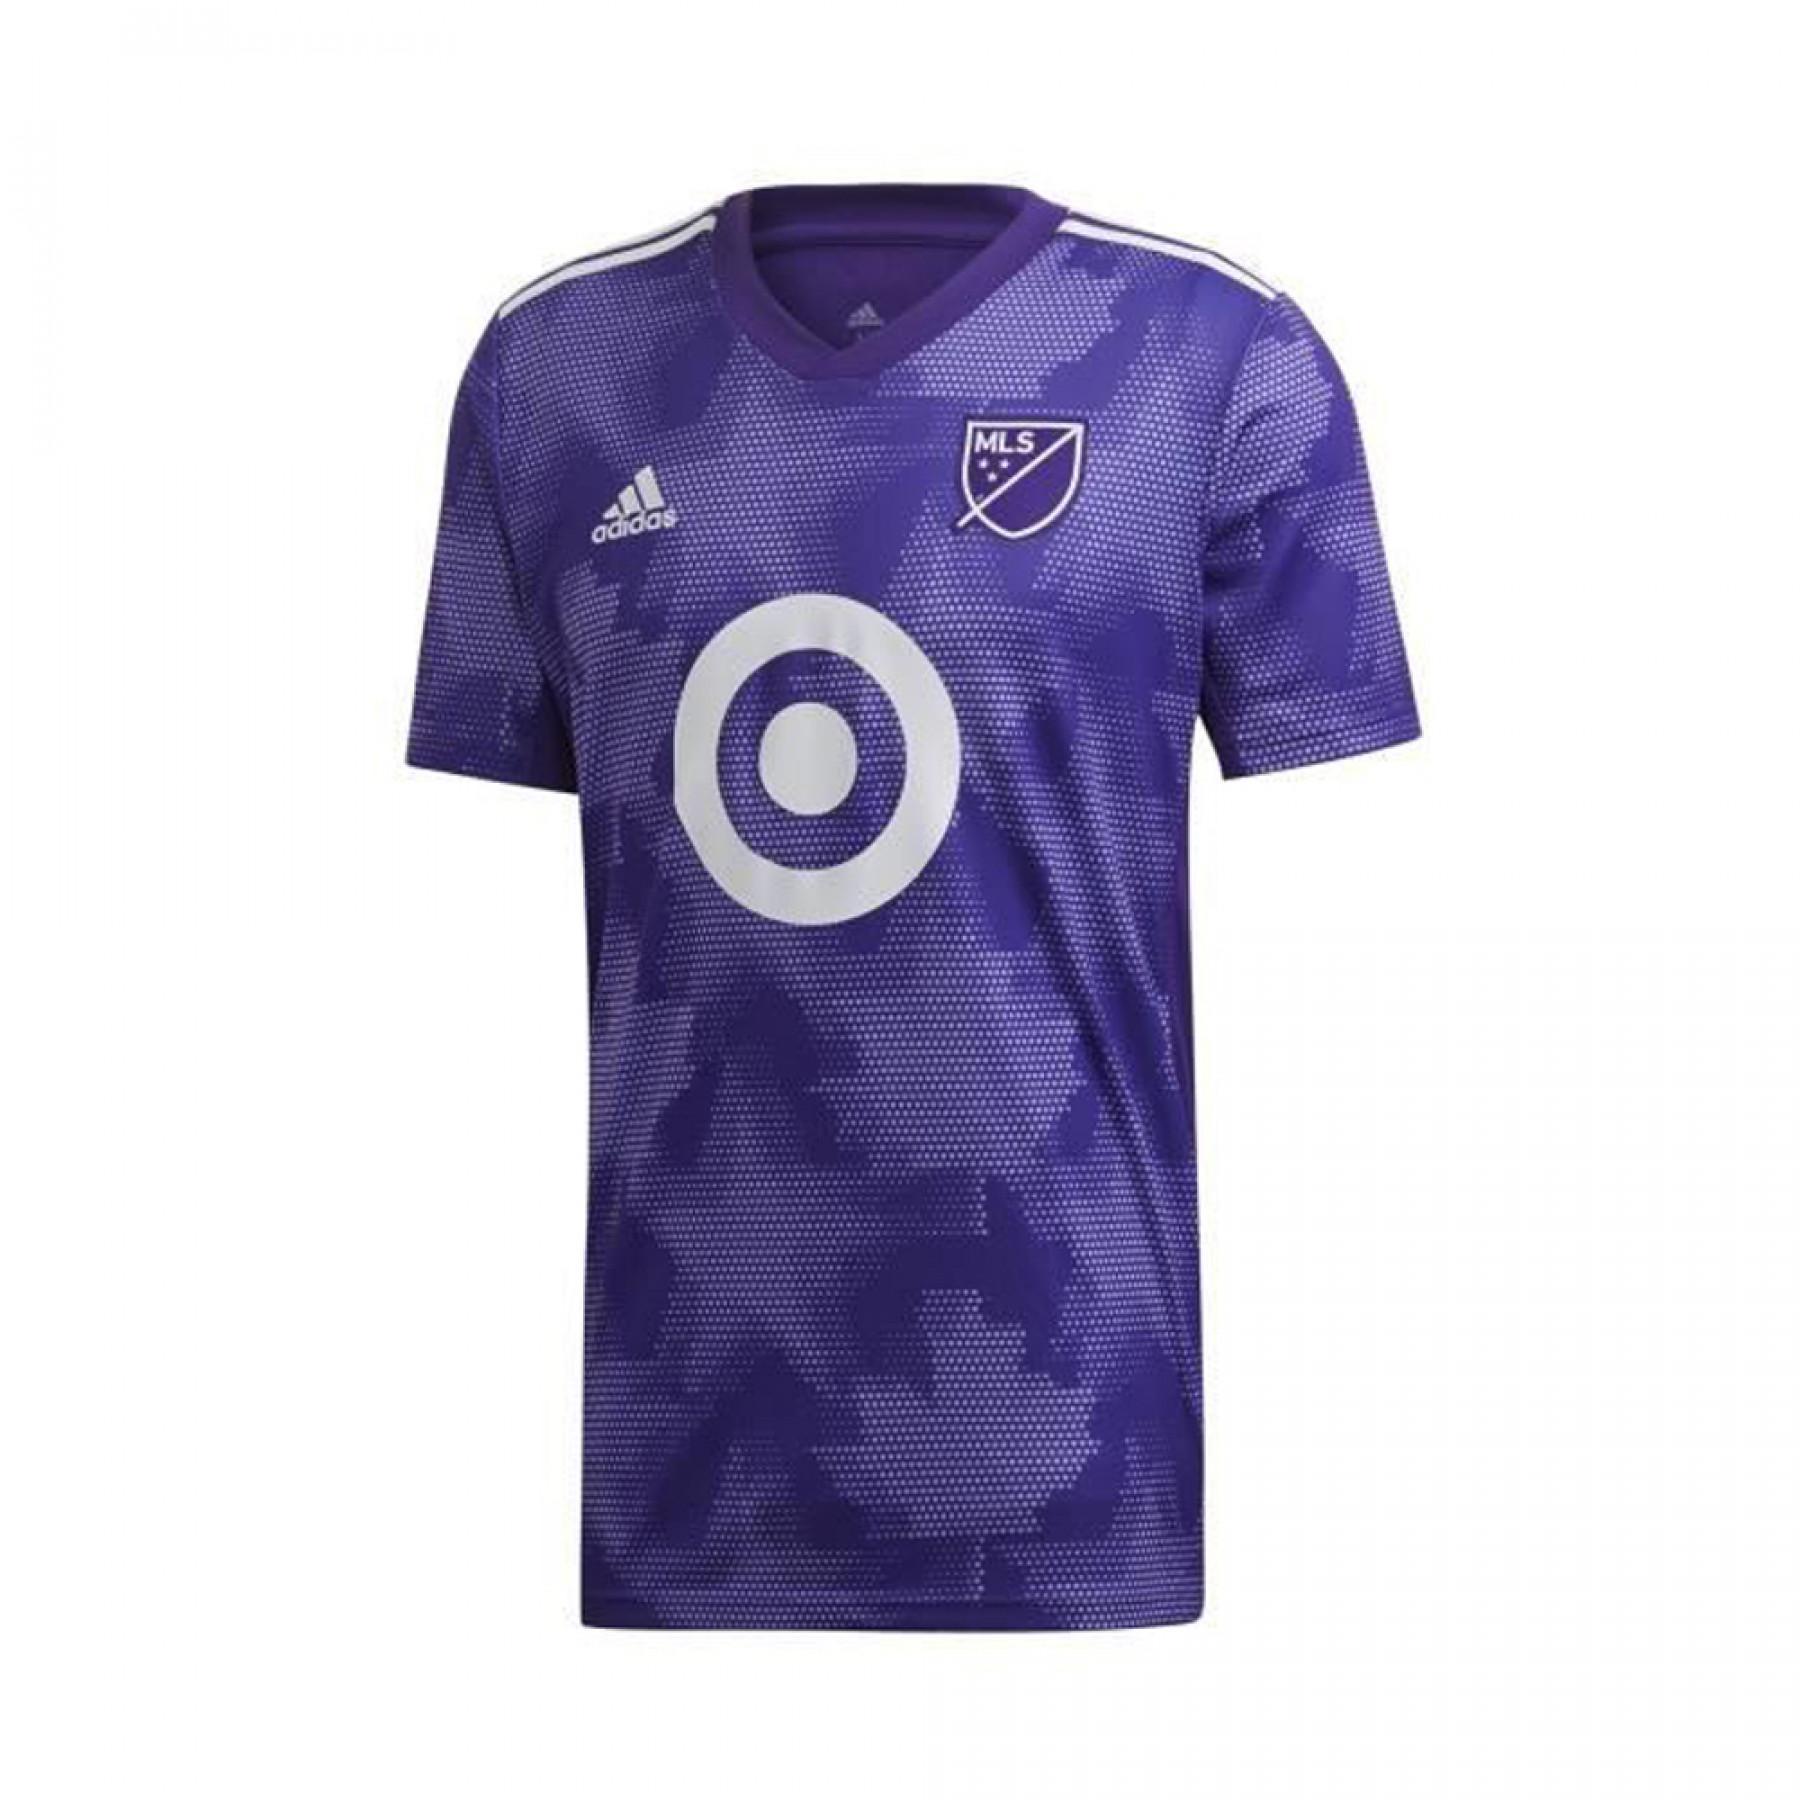 Autentisk tröja adidas MLS All-Star 2019/20